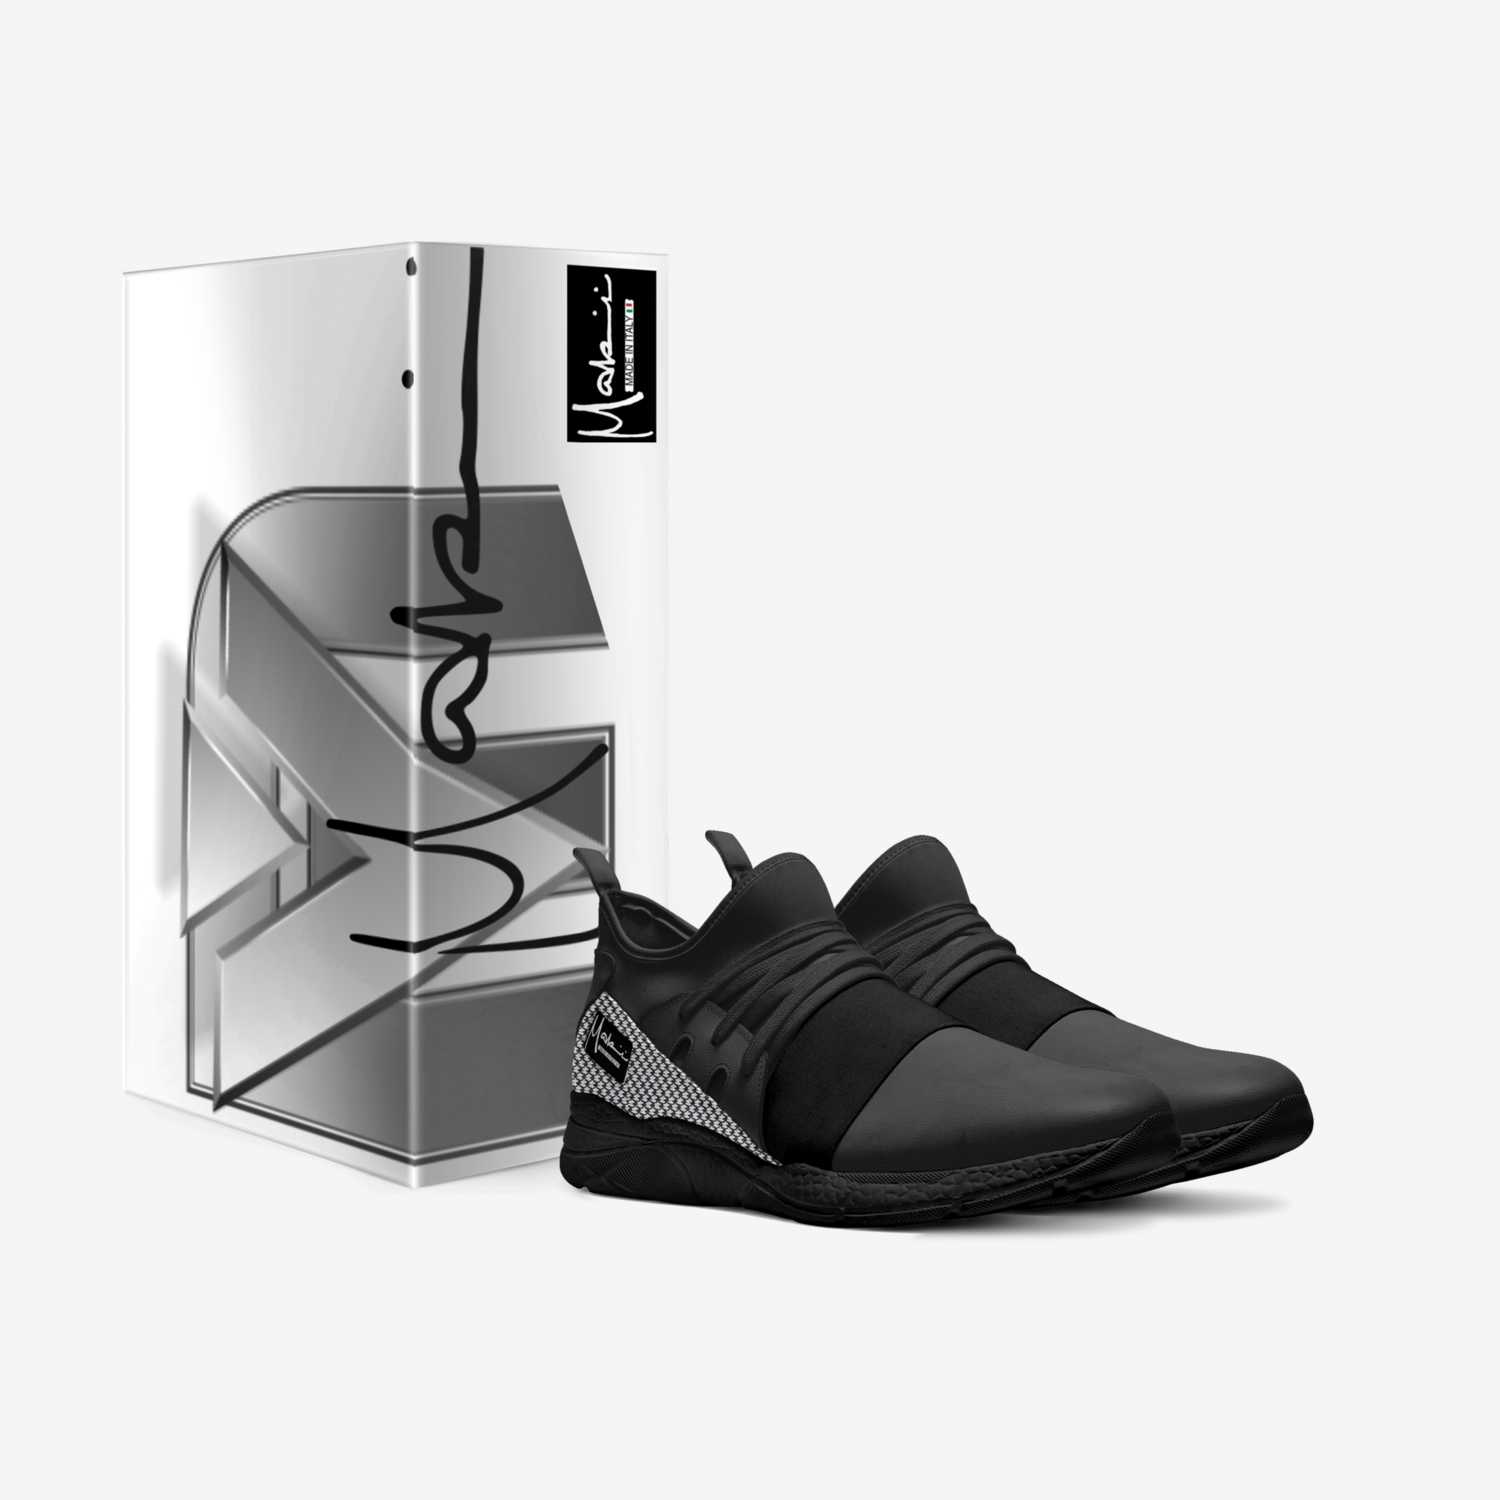 MAKIRI - CLASS custom made in Italy shoes by Makiri Duckett | Box view